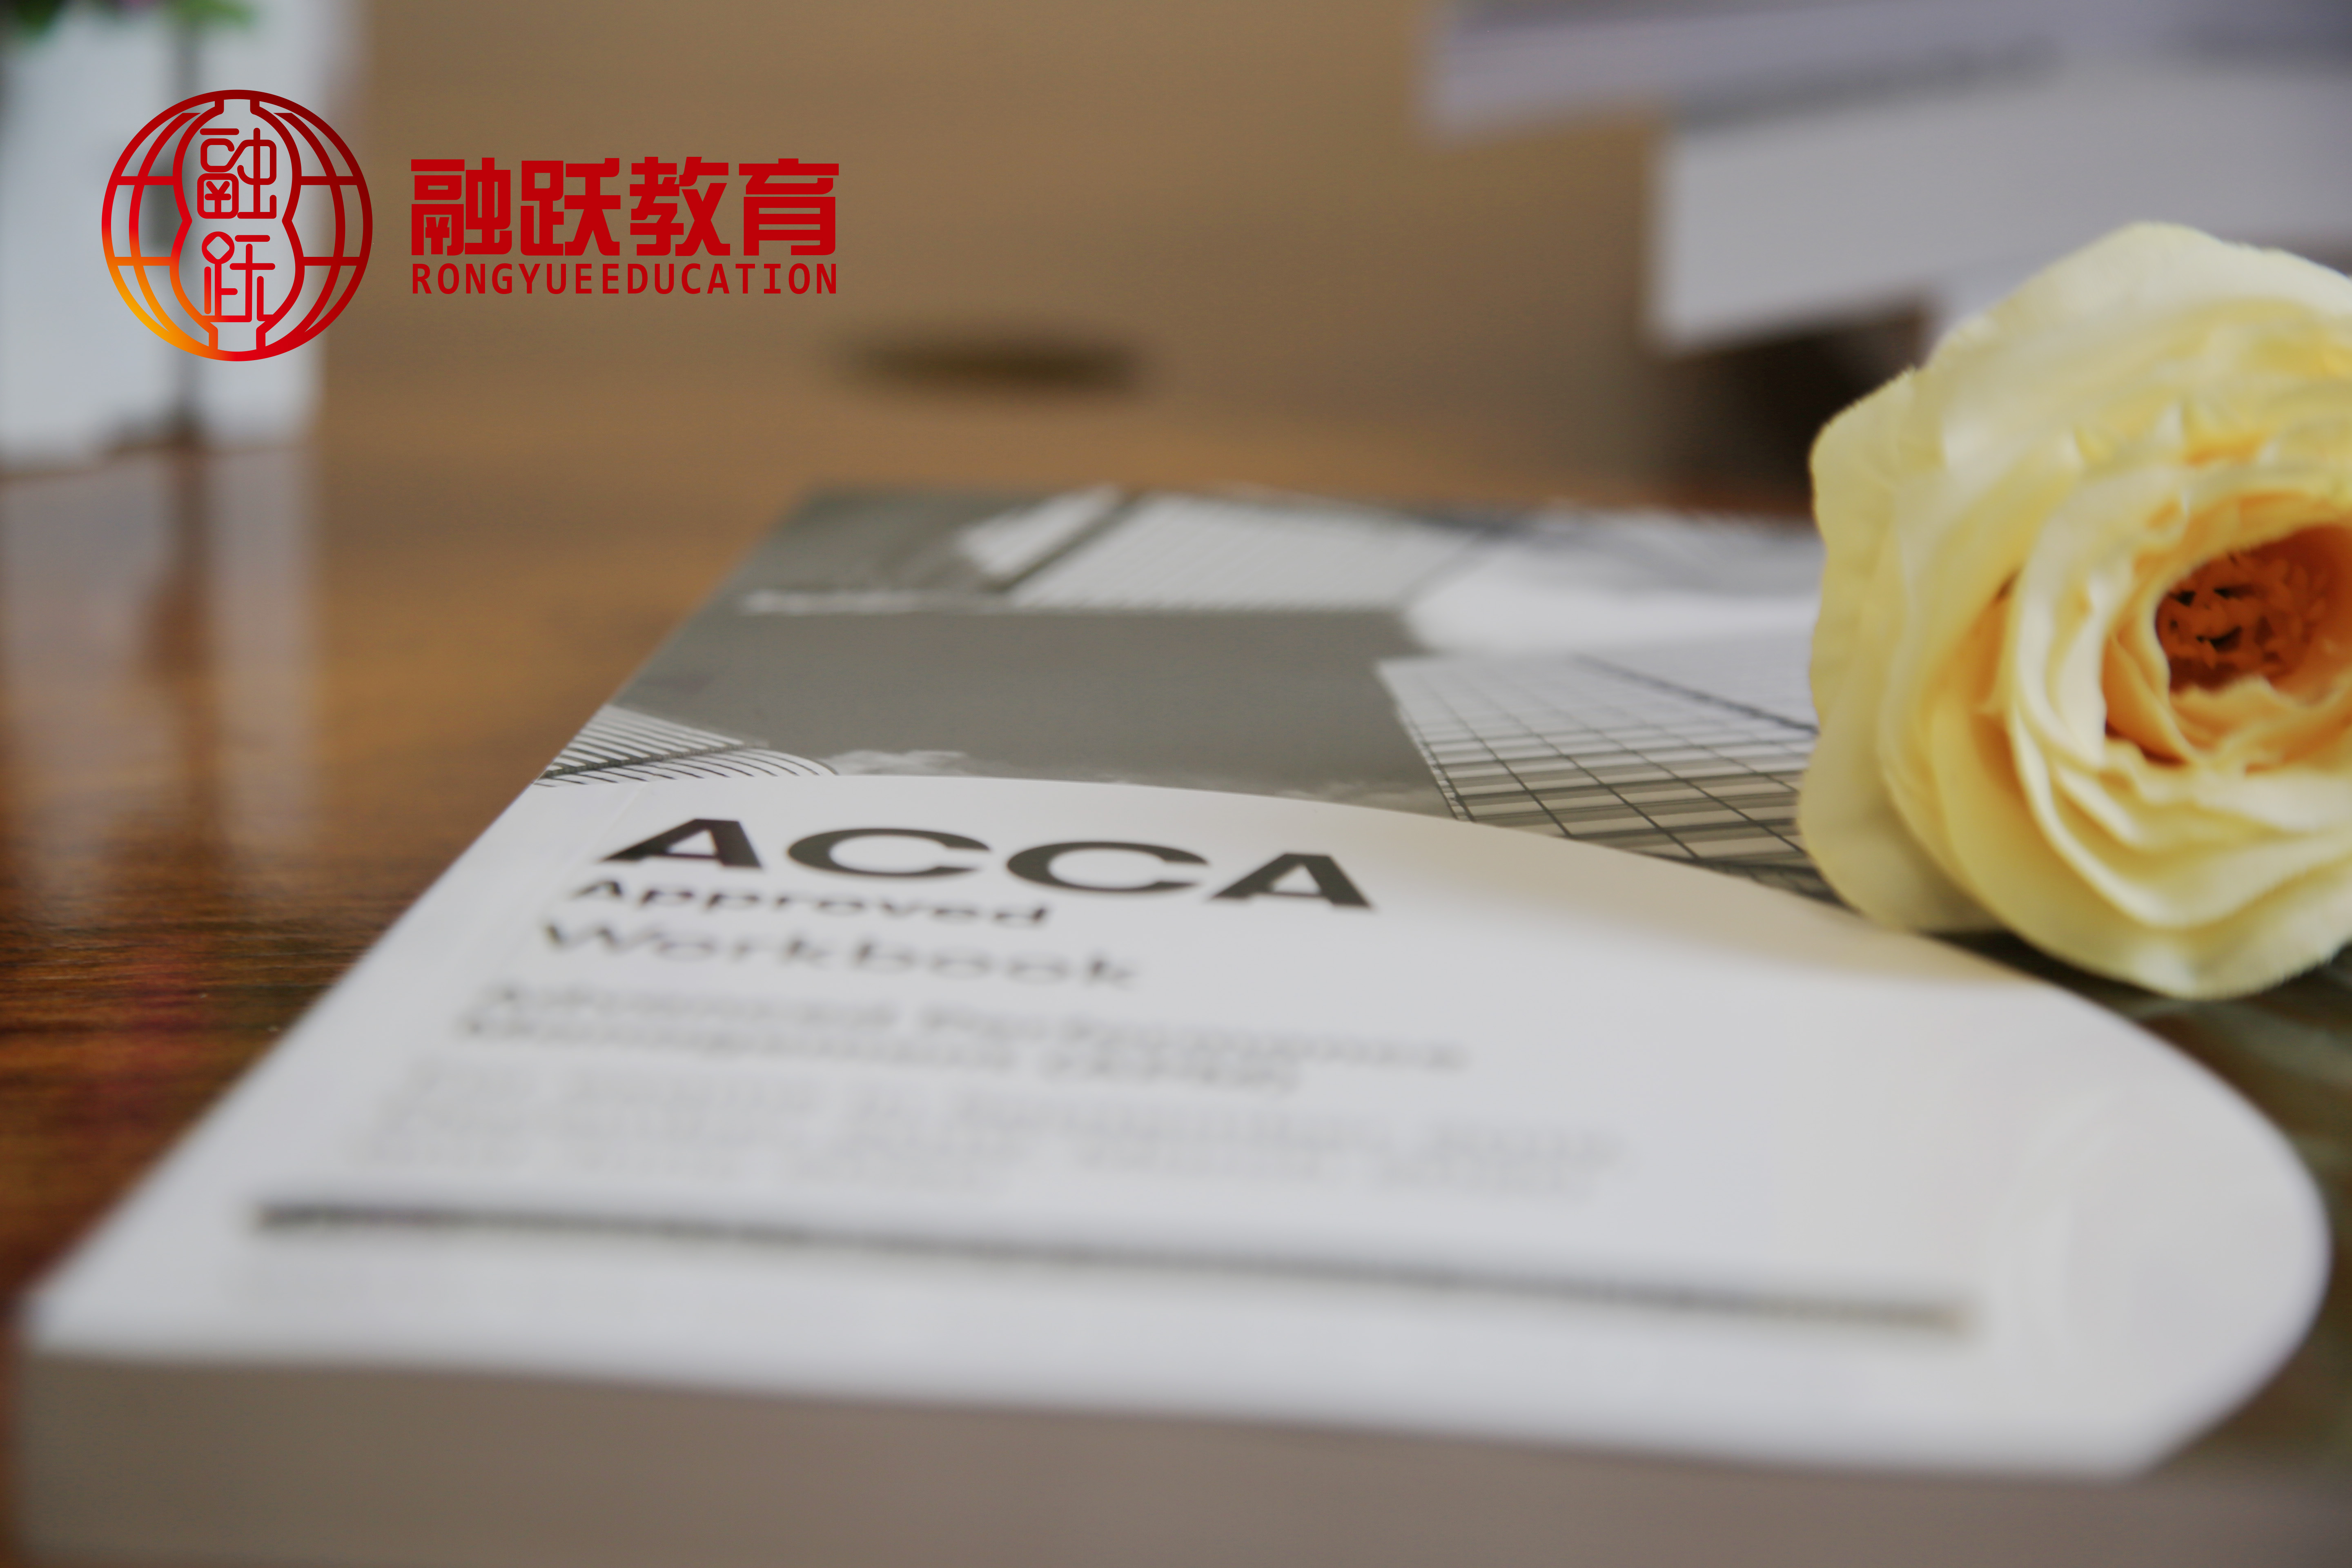 考ACCA证书还可以申请国外的大学吗？